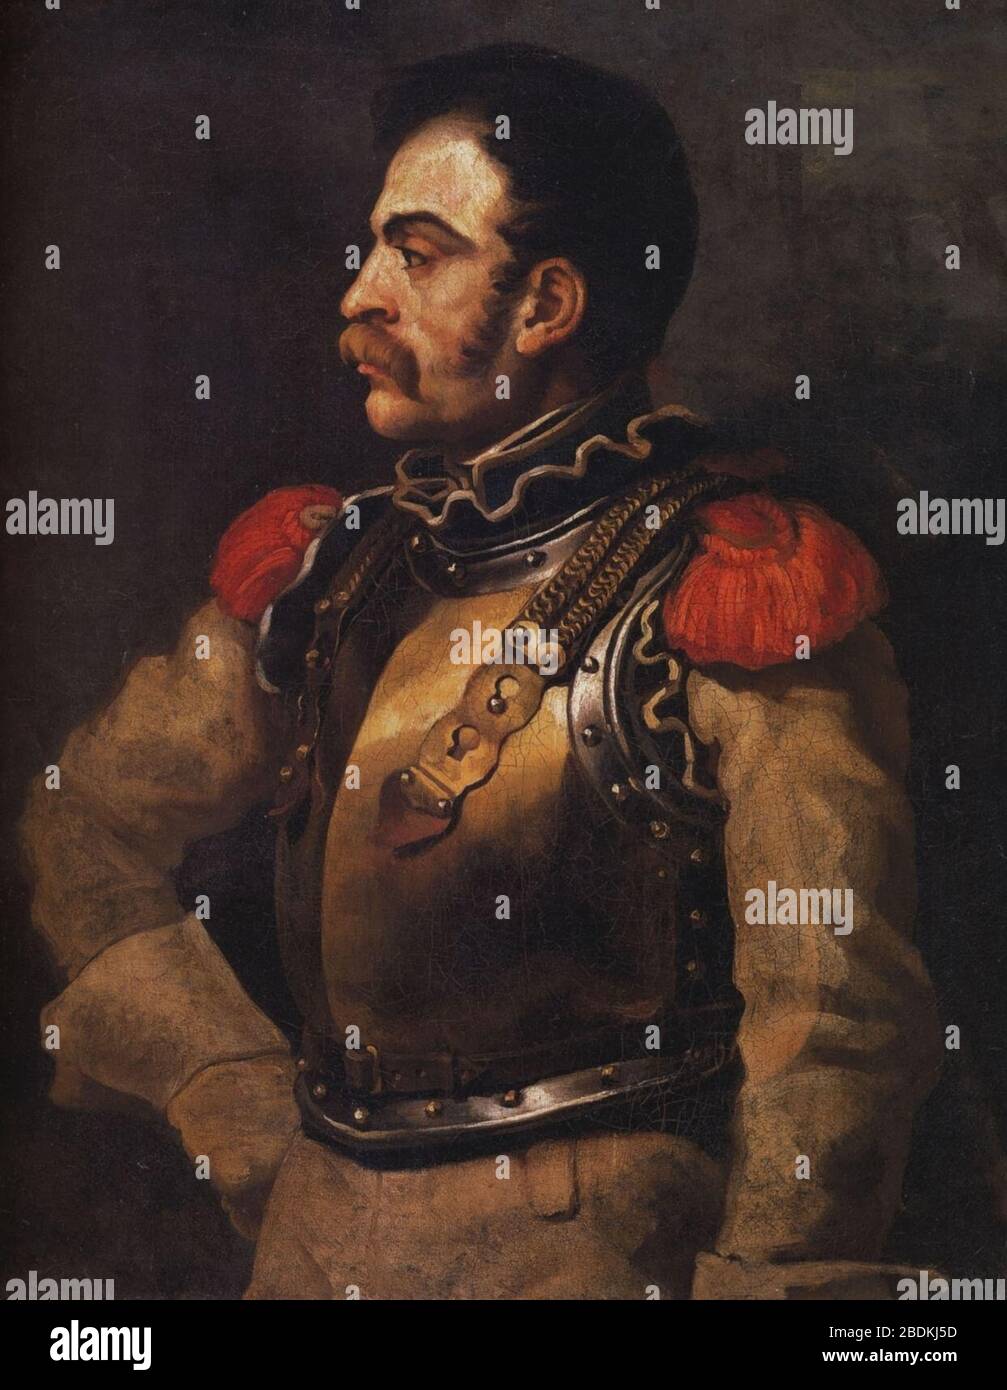 Géricault - Portrait de carabinier - Louvre. Stock Photo